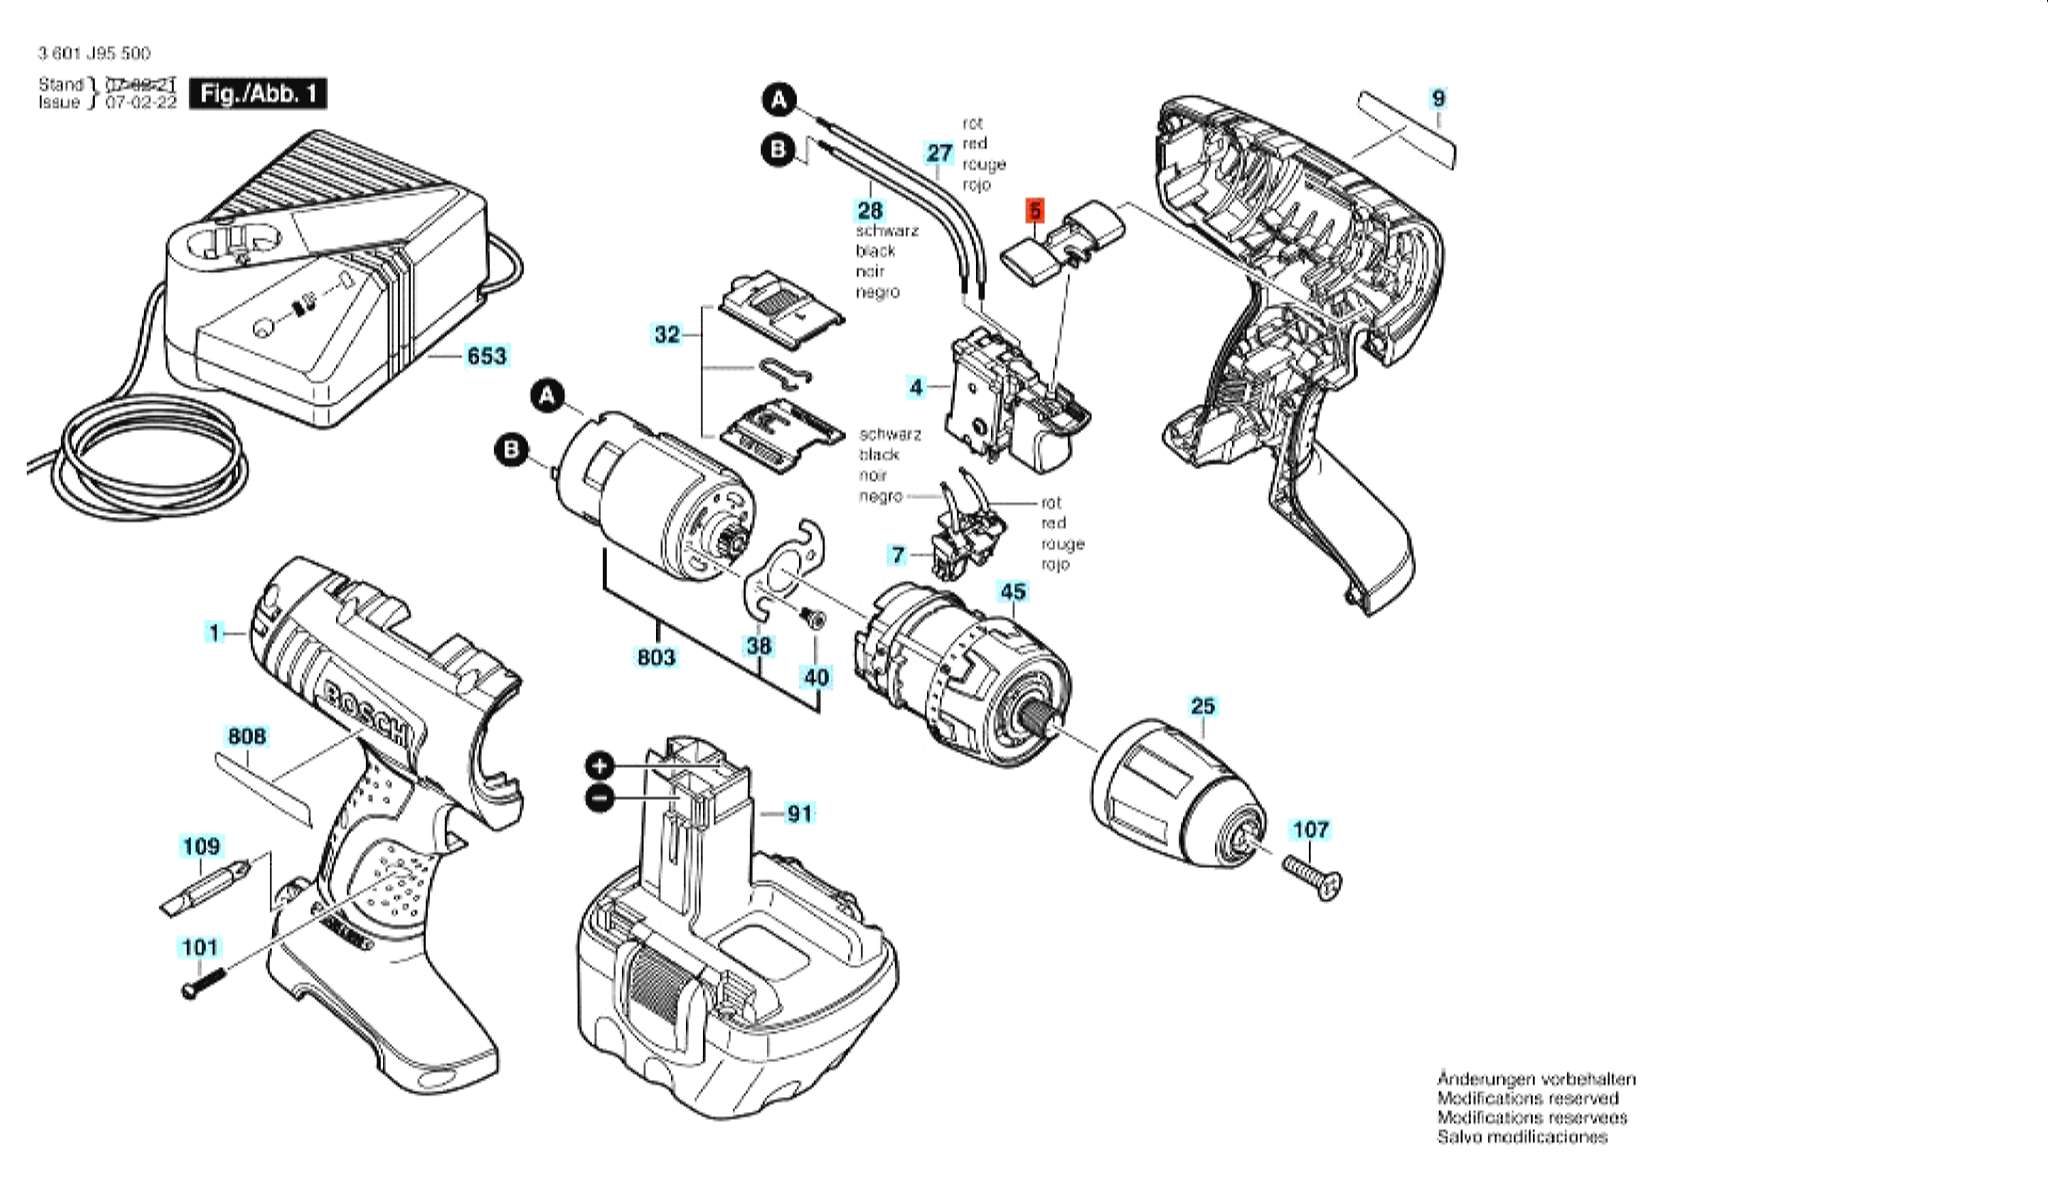 Запчасти, схема и деталировка Bosch GSR 12 V (ТИП 3601J95501)